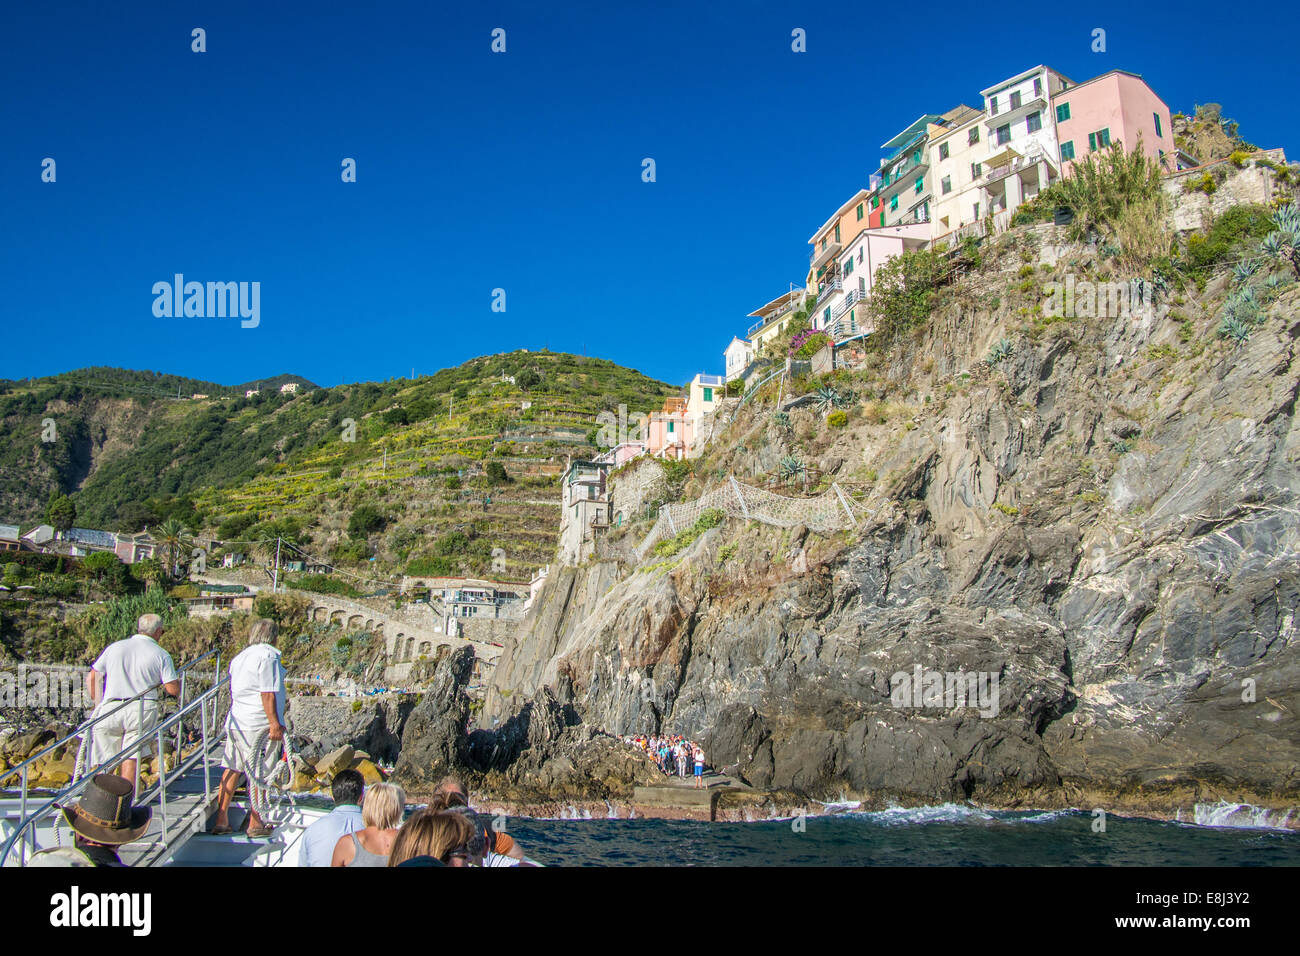 Manarola, Cinque Terre (Five Lands), Ligurian Region, Italy. Stock Photo